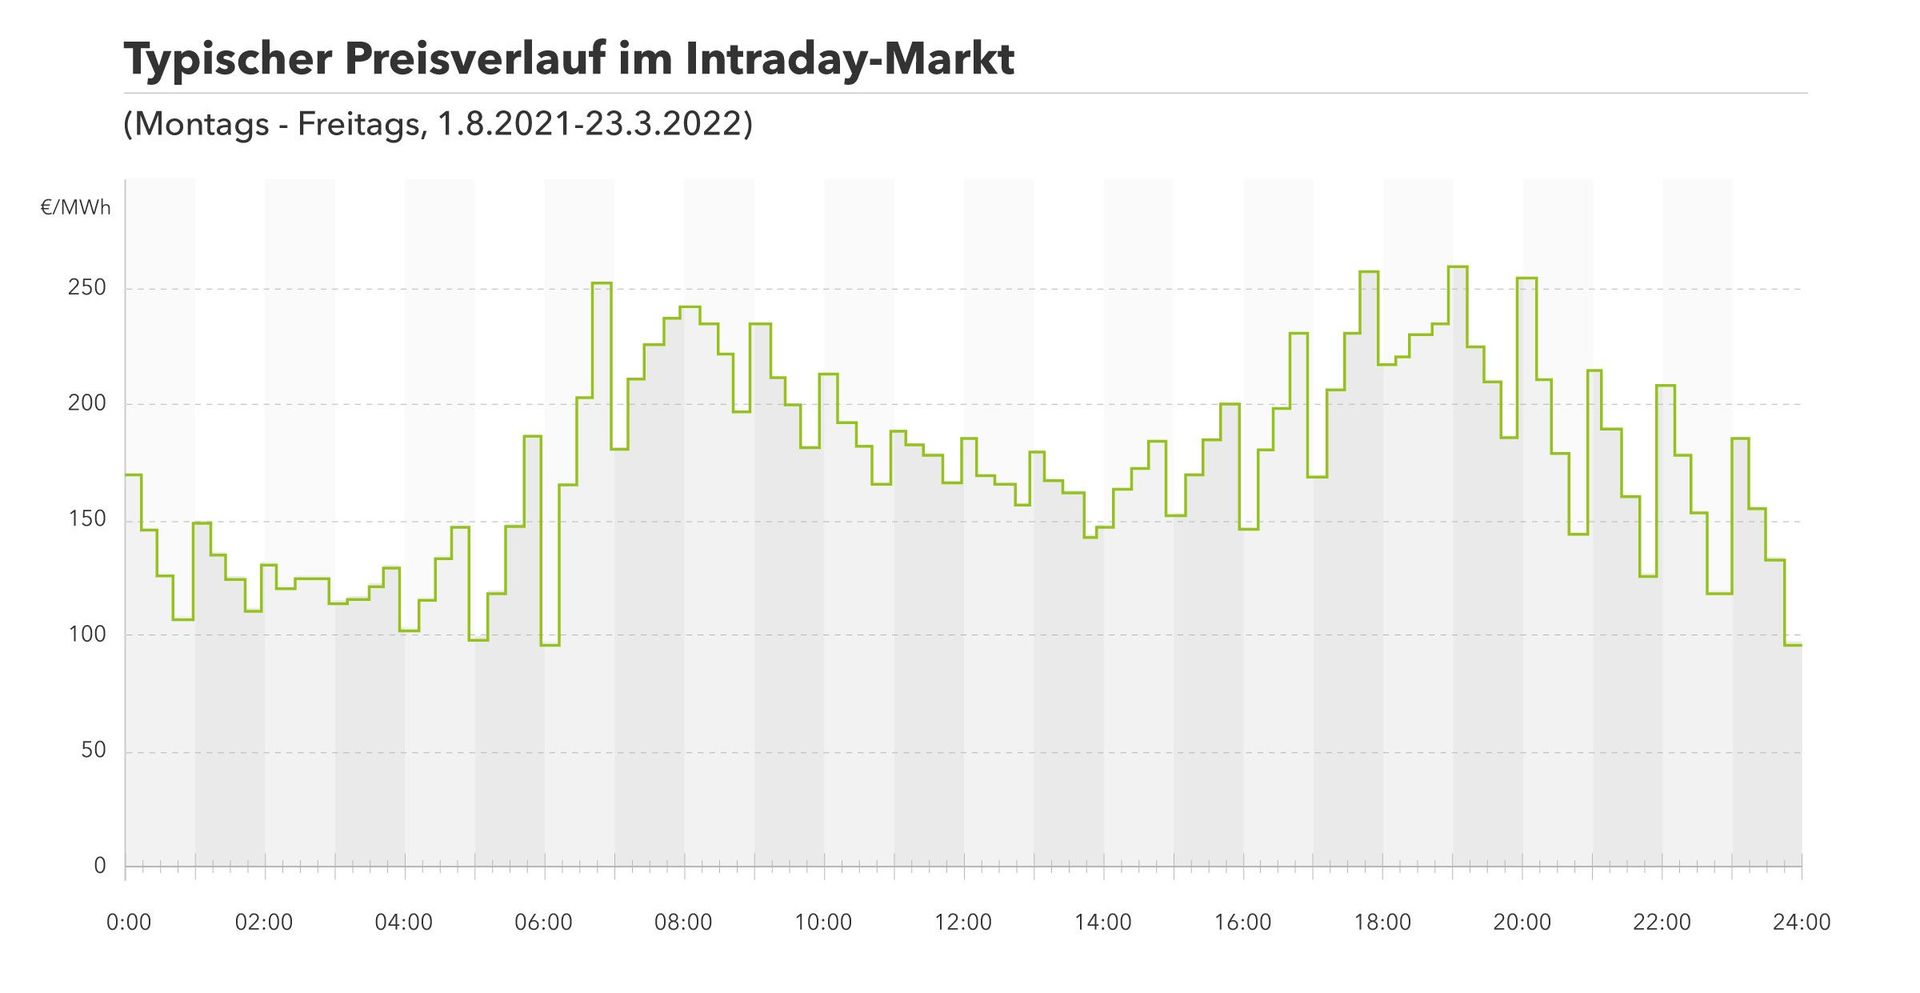 graphische Darstellung eines typischen Preisverlaufs im Intraday-Markt